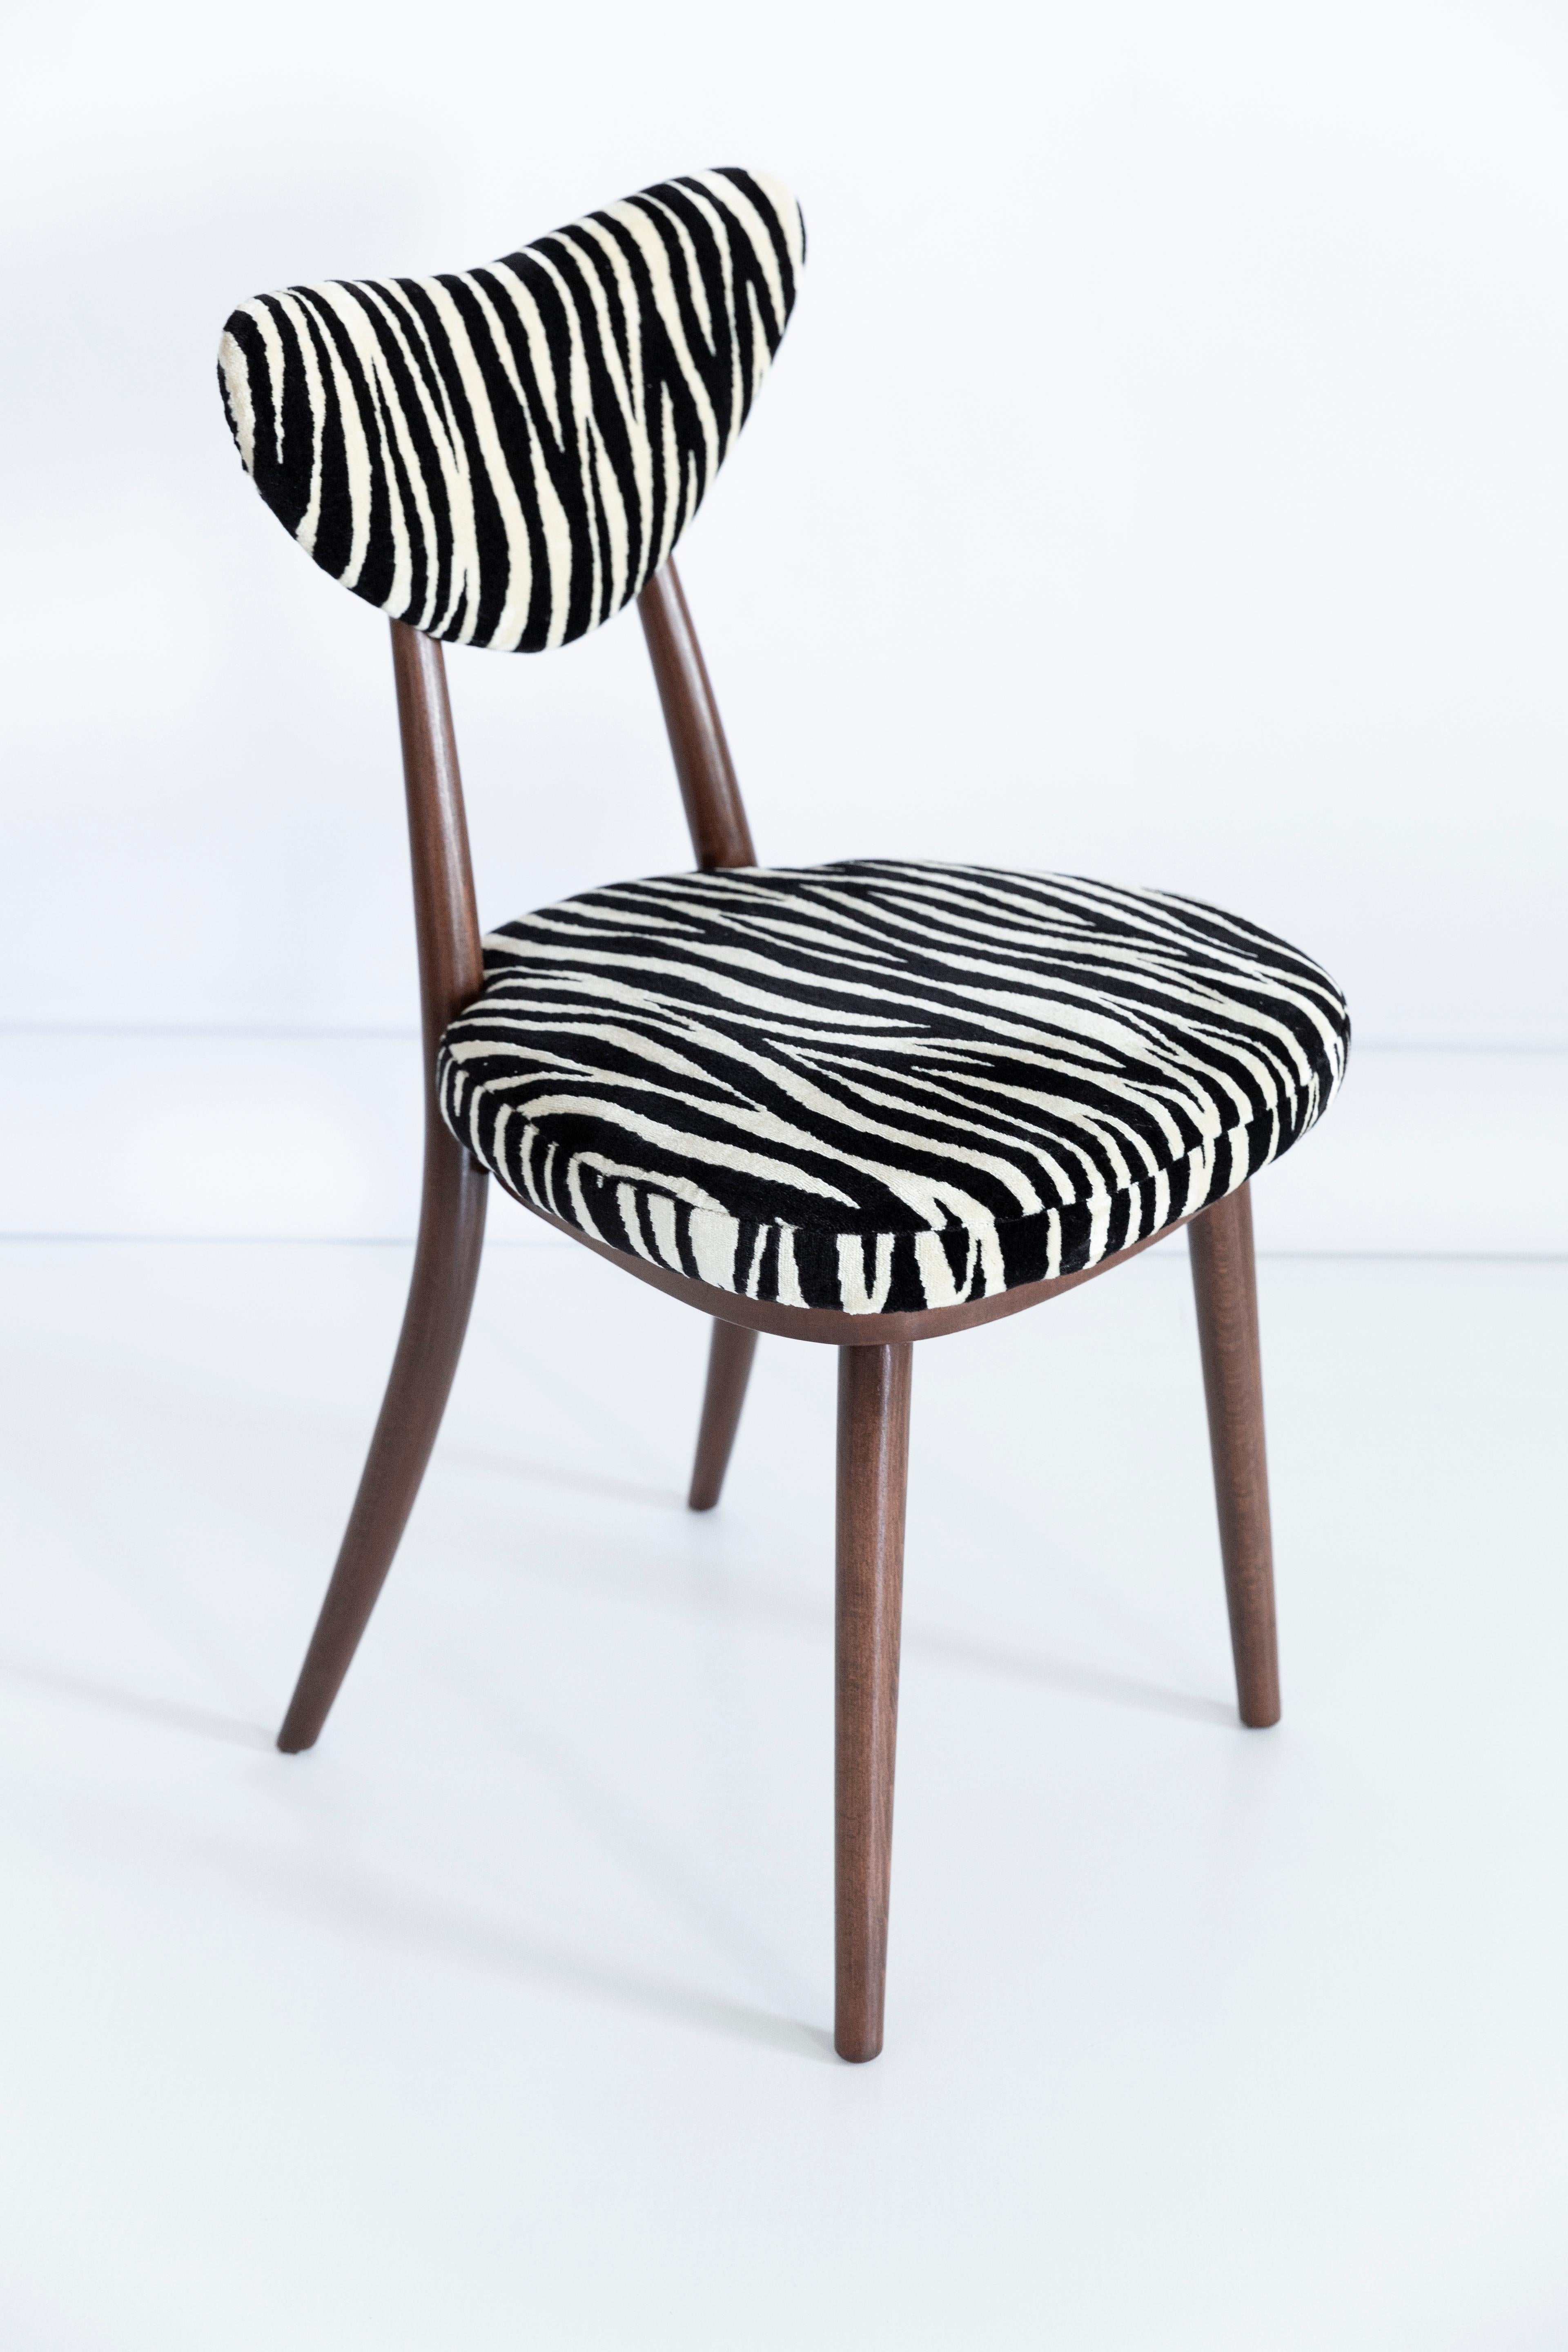 Velvet Set of Four Midcentury Zebra Black and White Heart Chairs, Poland, 1960s For Sale